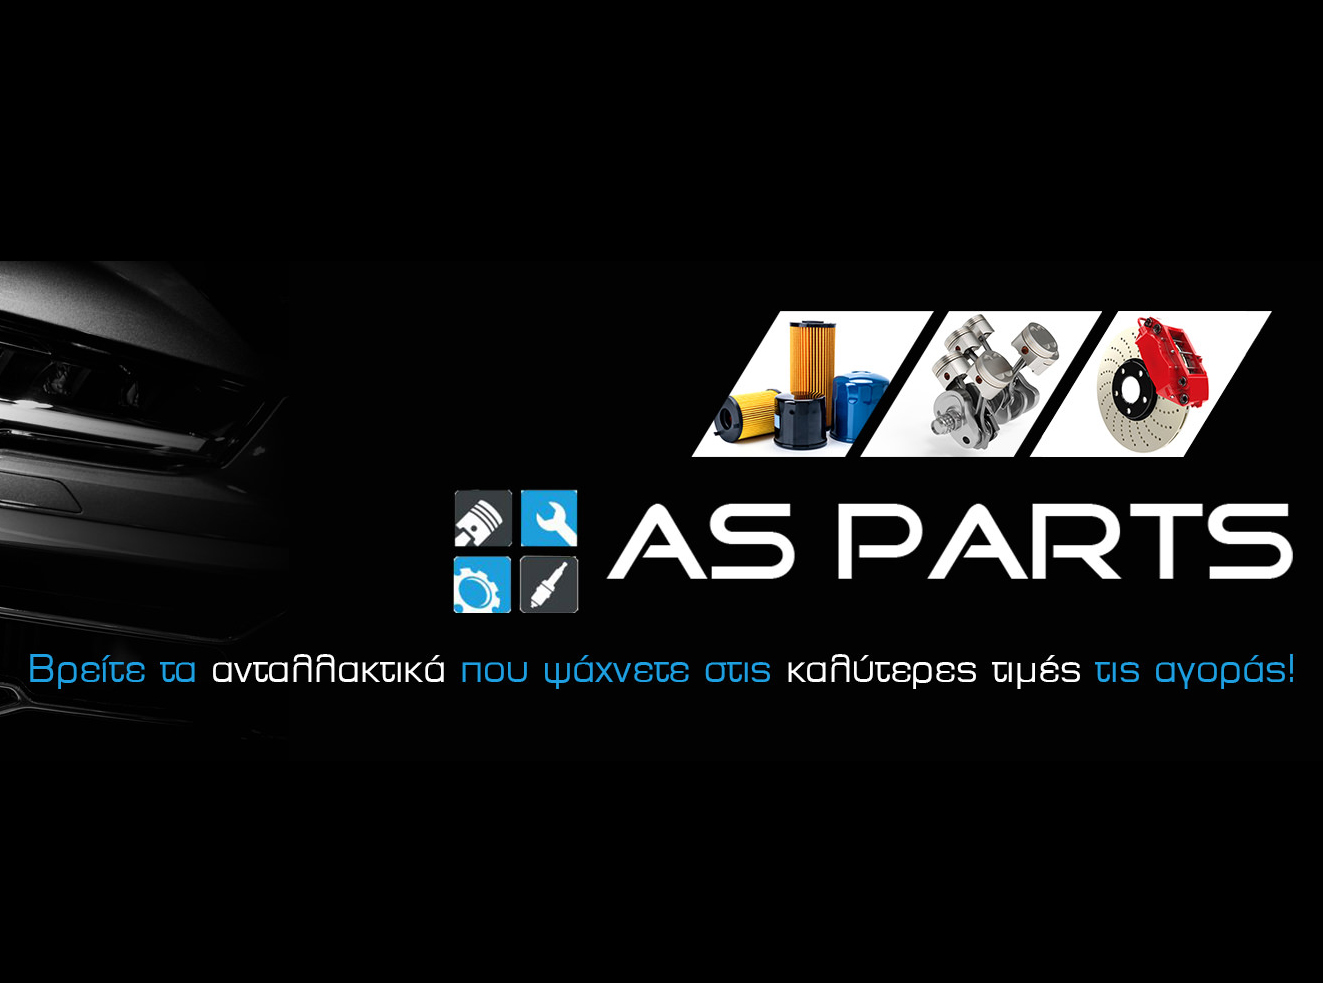 Ανταλλακτικά Αυτοκινήτων Online | Asparts.gr